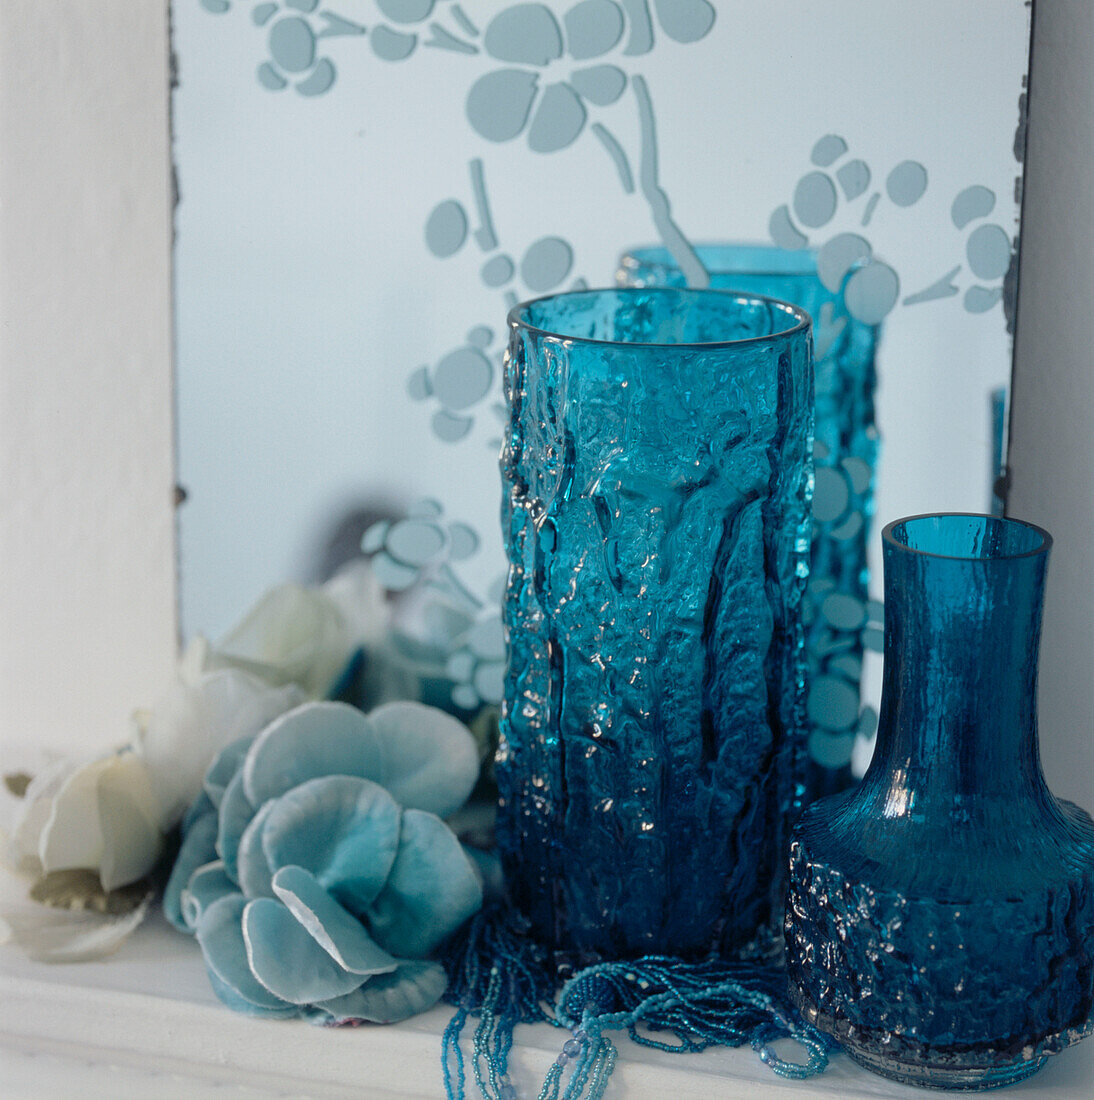 Detail von türkisblauen Glasvasen und Haushaltswaren auf einem Regal mit einem geätzten Spiegel an der Wand